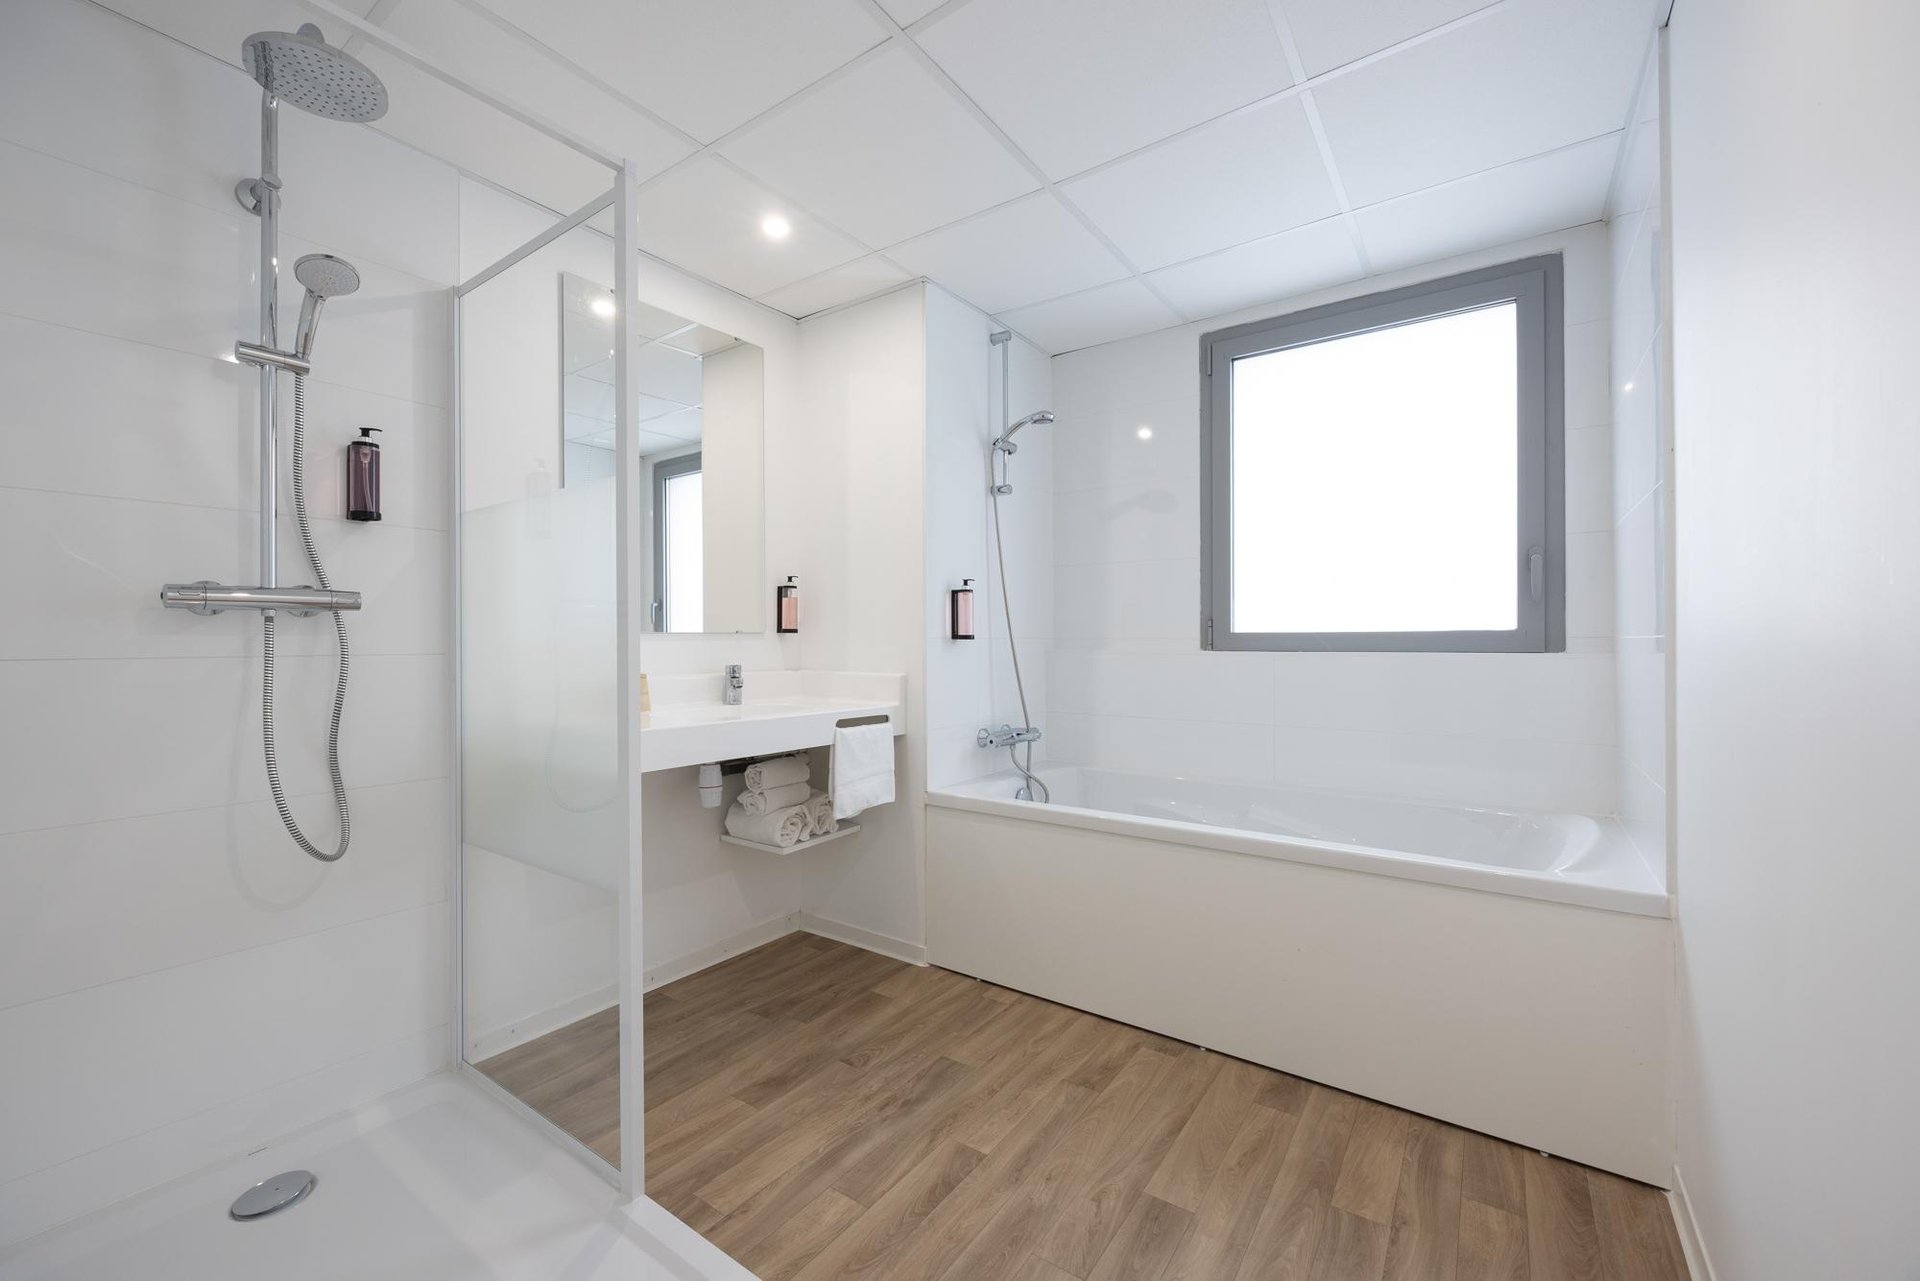 Le Relais des Deux Mers | 3 star hotel Lot-et-Garonne | Family flat | Bathroom with bath